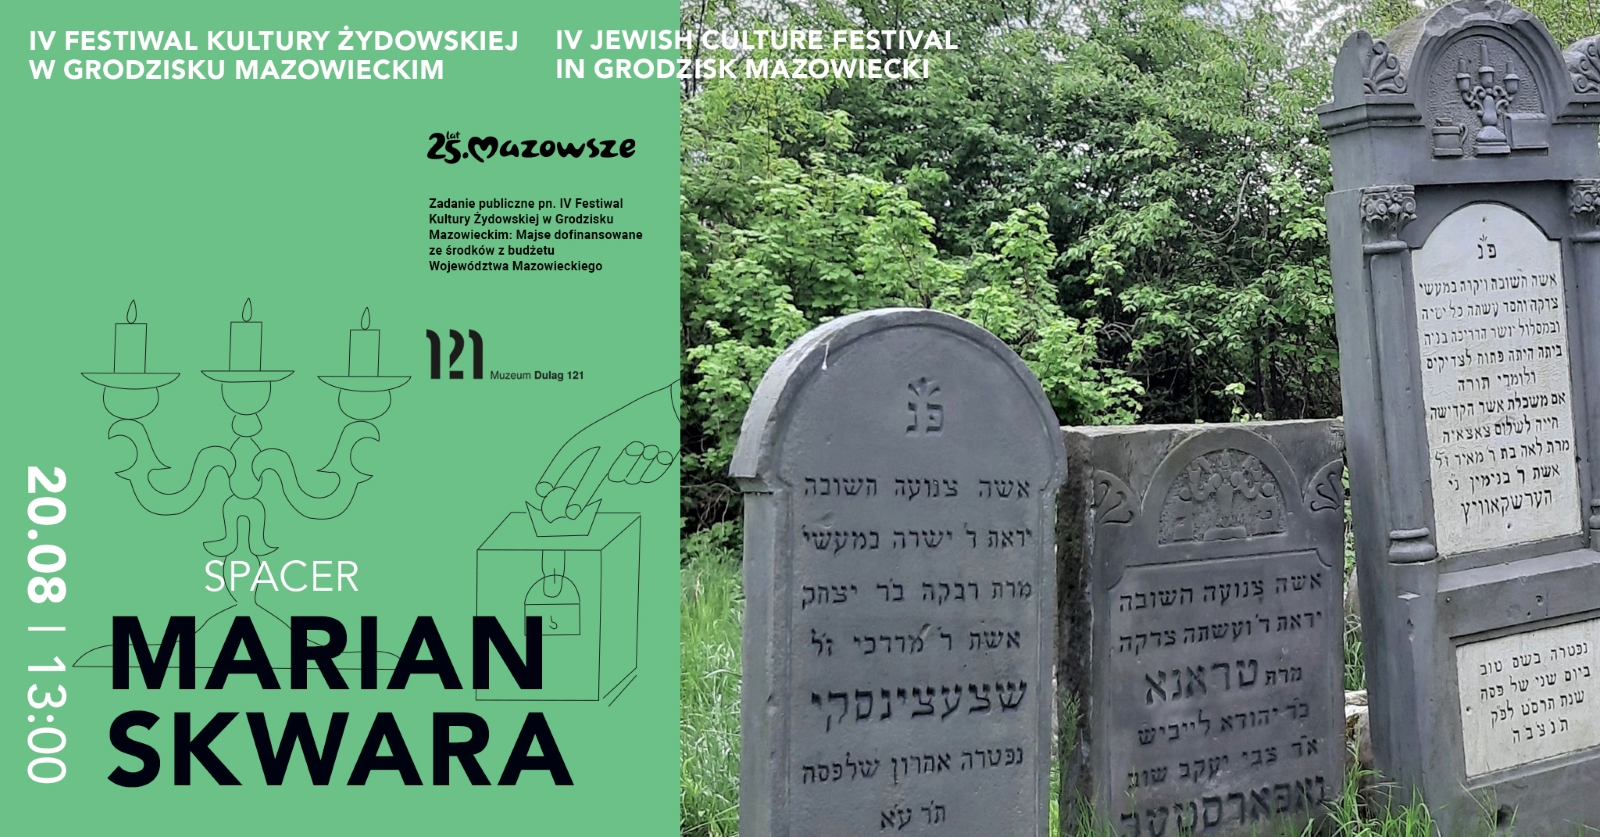 Z lewej strony napis: 20.08, spacer, Marian Skwara. Z prawej - nagrobki na cmentarzu żydowskim.